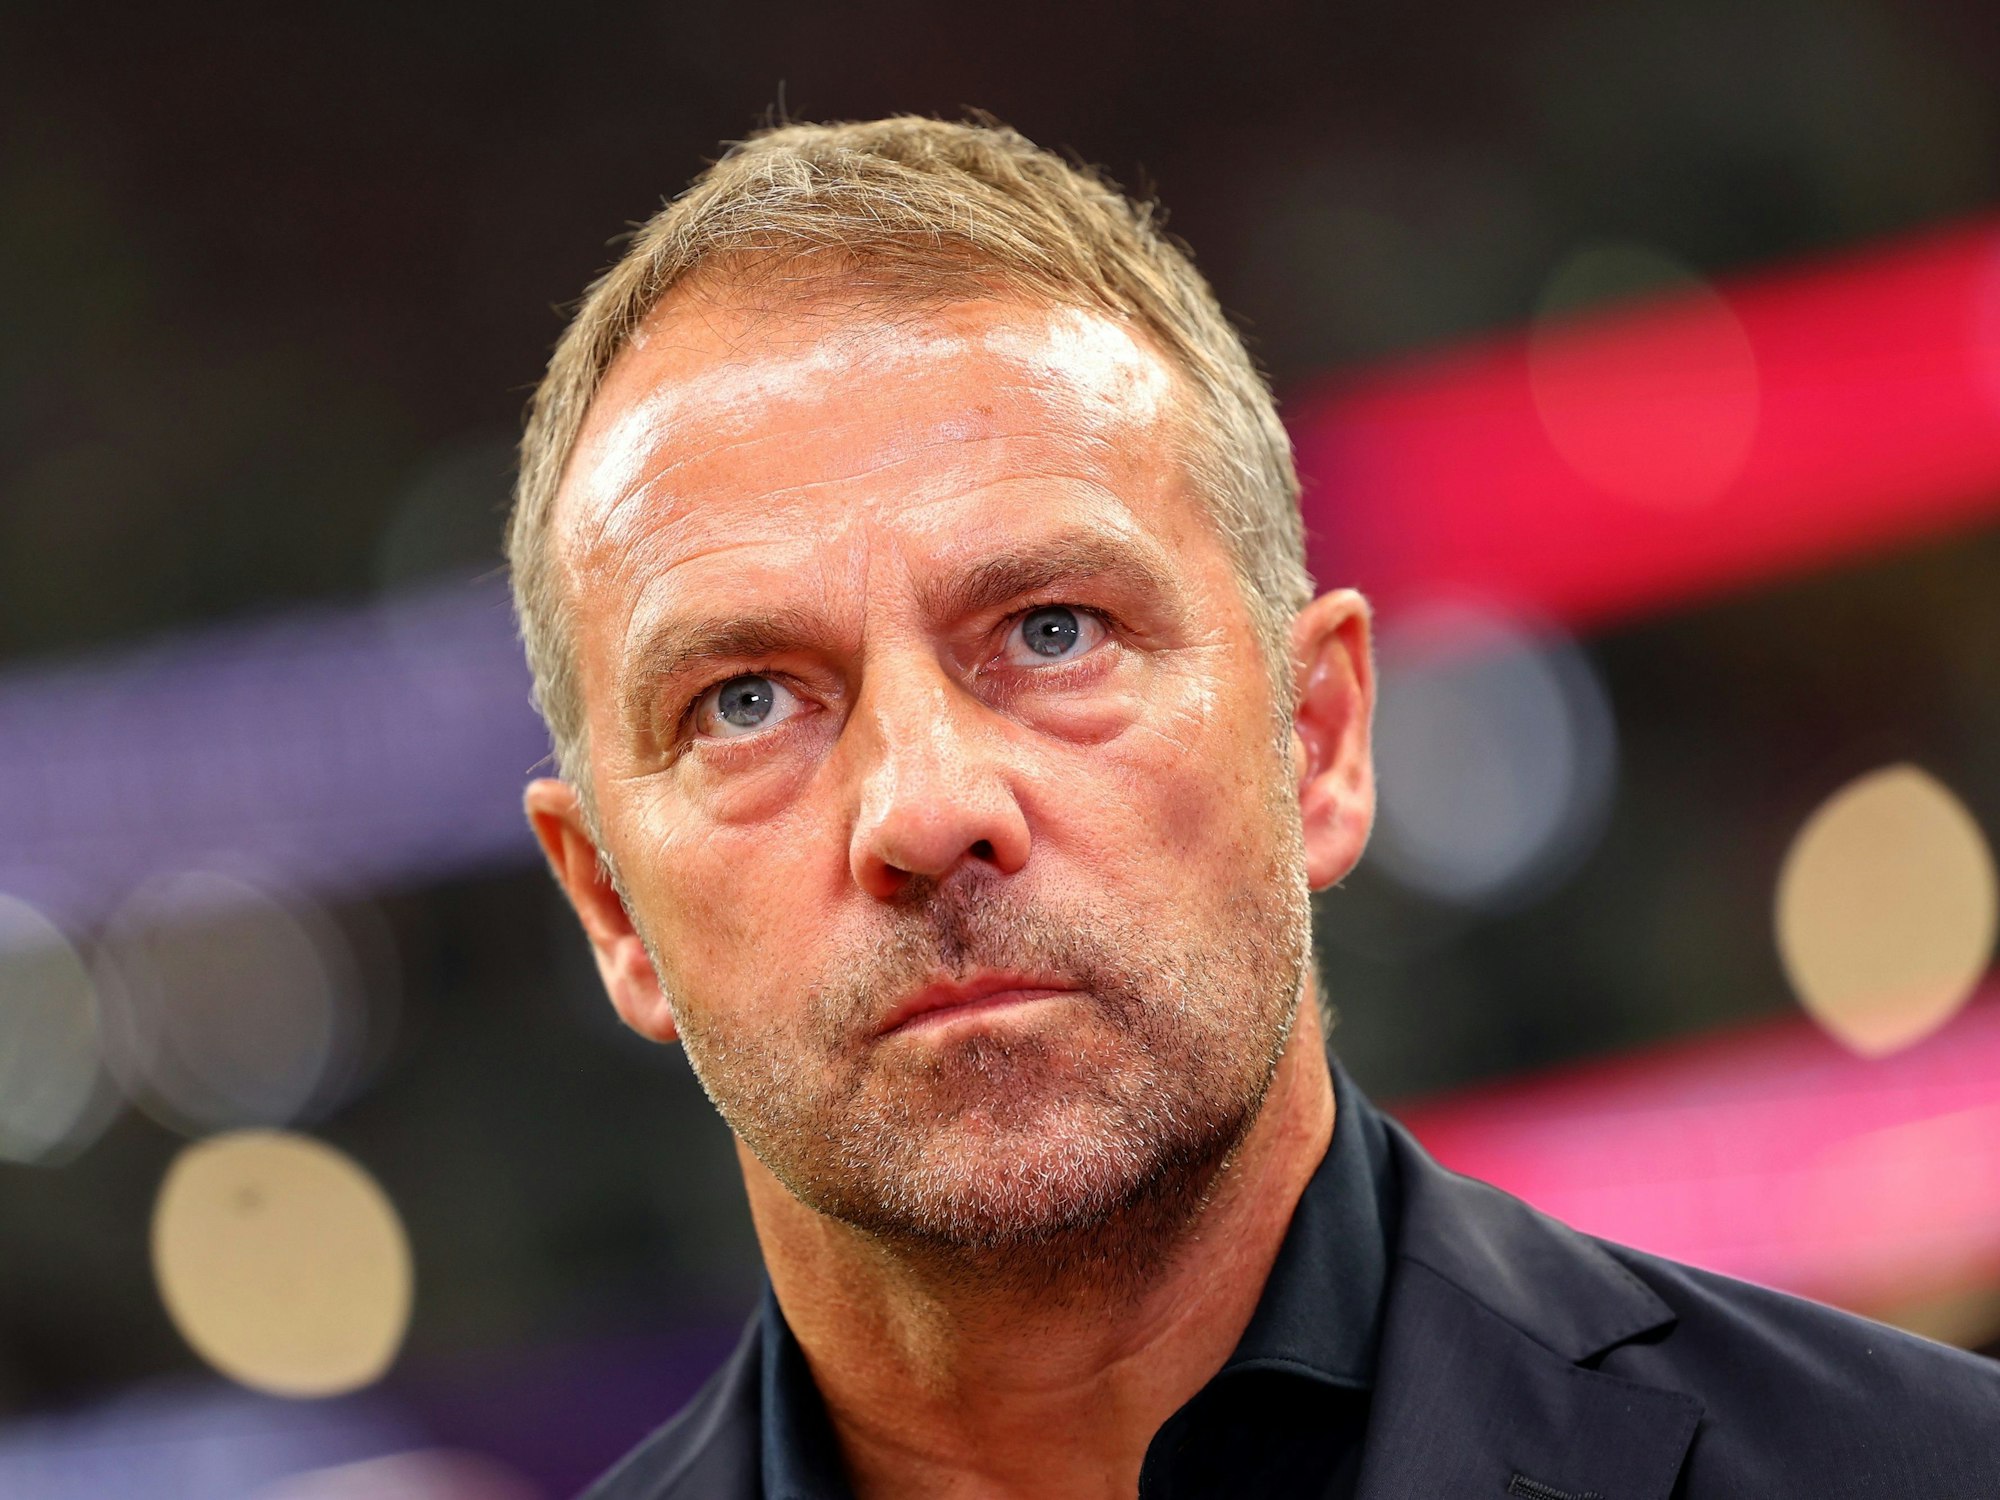 Deutschlands Trainer Hans-Dieter Flick vor dem Anstoß.